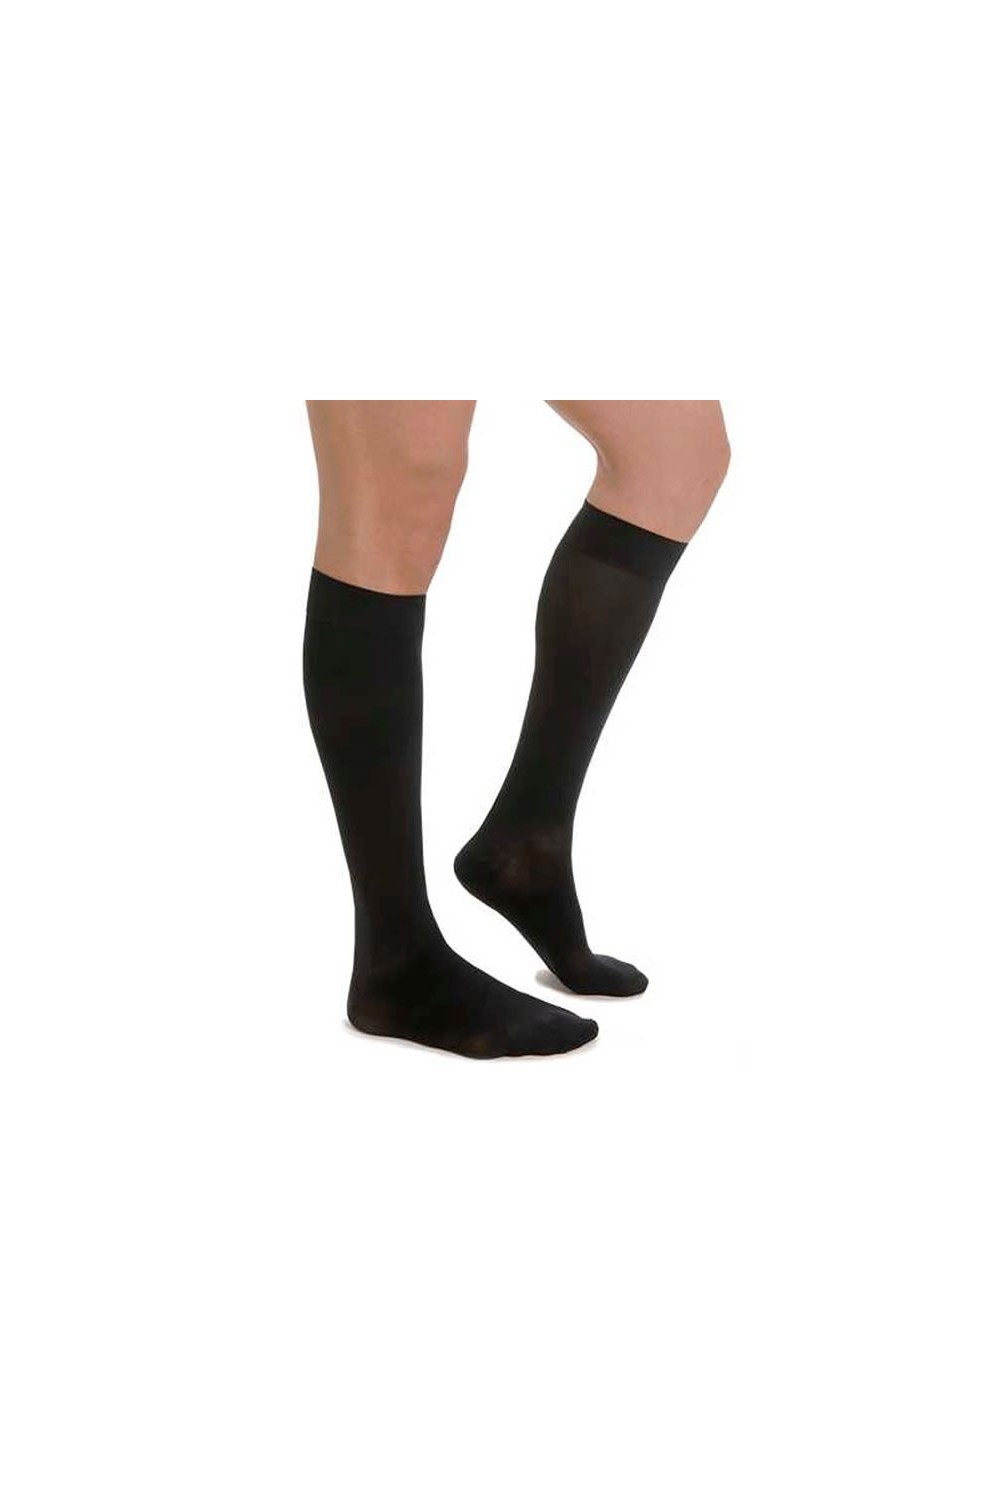 Medilast Socks 300 Black Small